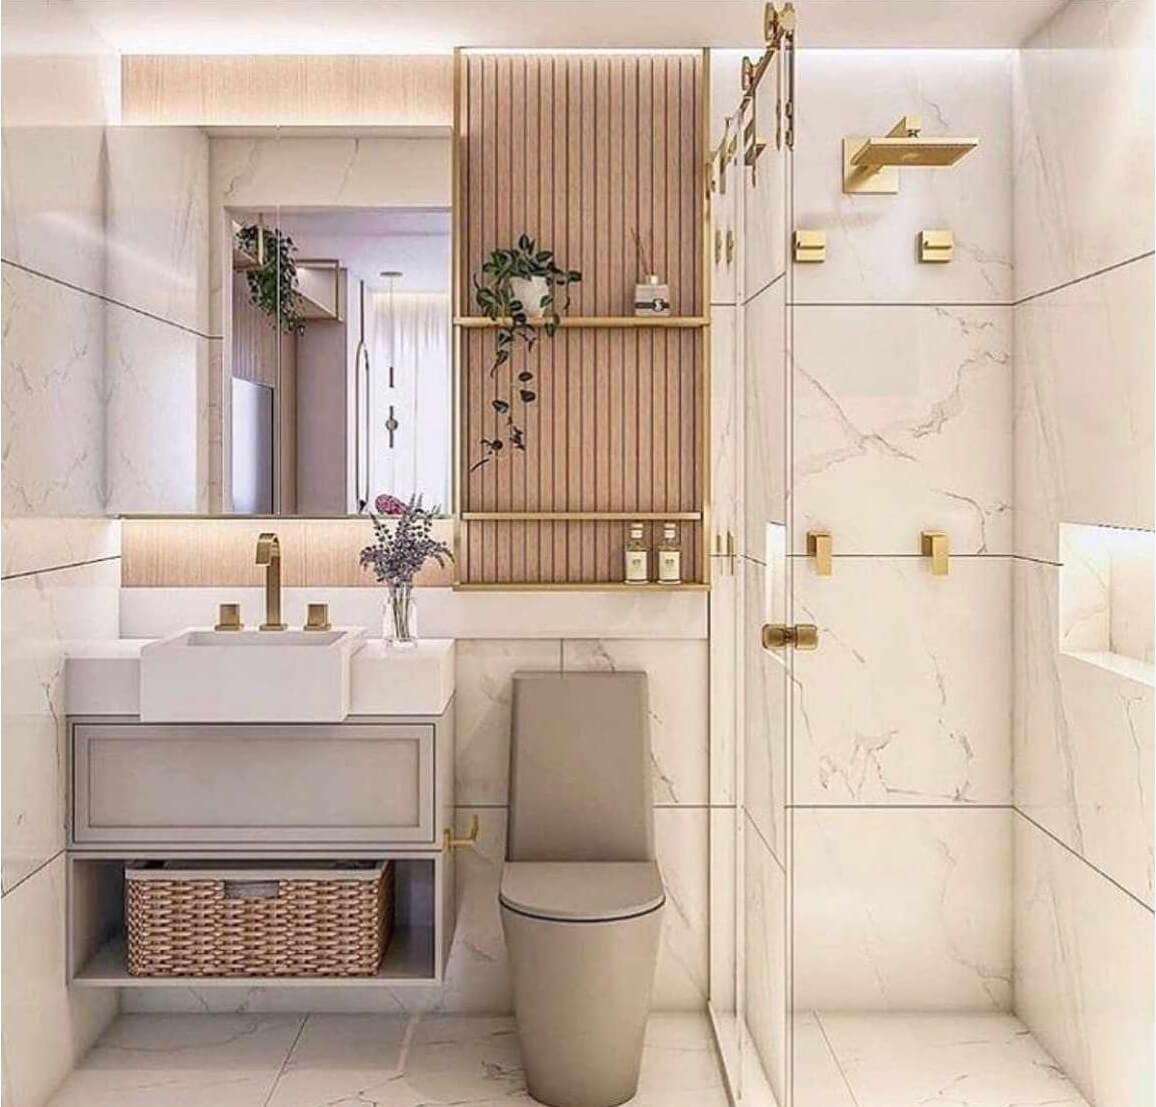 Phong cách thiết kế phòng tắm đẹp nhất 2024:
Bạn đang tìm kiếm phong cách thiết kế phòng tắm đẹp nhất tại năm 2024? Chúng tôi tự hào giới thiệu cho bạn một chùm ý tưởng thiết kế phòng tắm sang trọng, hiện đại và tối ưu không gian. Với việc sử dụng những trang thiết bị và thiết kế độc đáo, chúng tôi cam kết sẽ mang đến cho bạn không gian tắm tuyệt đẹp, đáp ứng mọi nhu cầu của bạn.